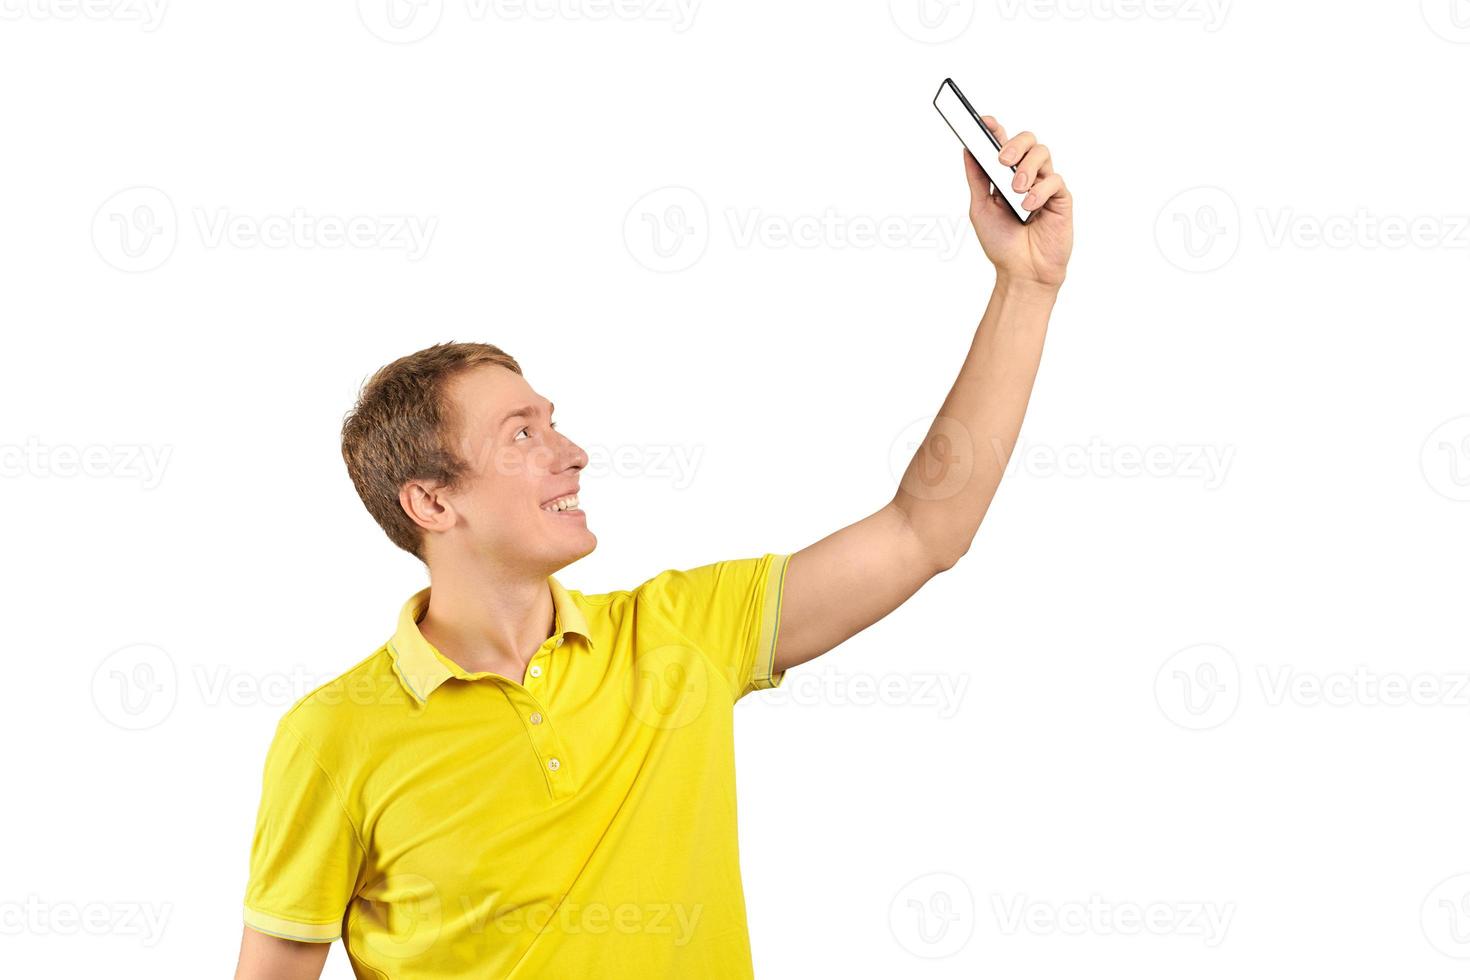 cara engraçado em vídeo de camiseta amarela brilhante conversando usando videochamada com telefone, jovem sorridente foto